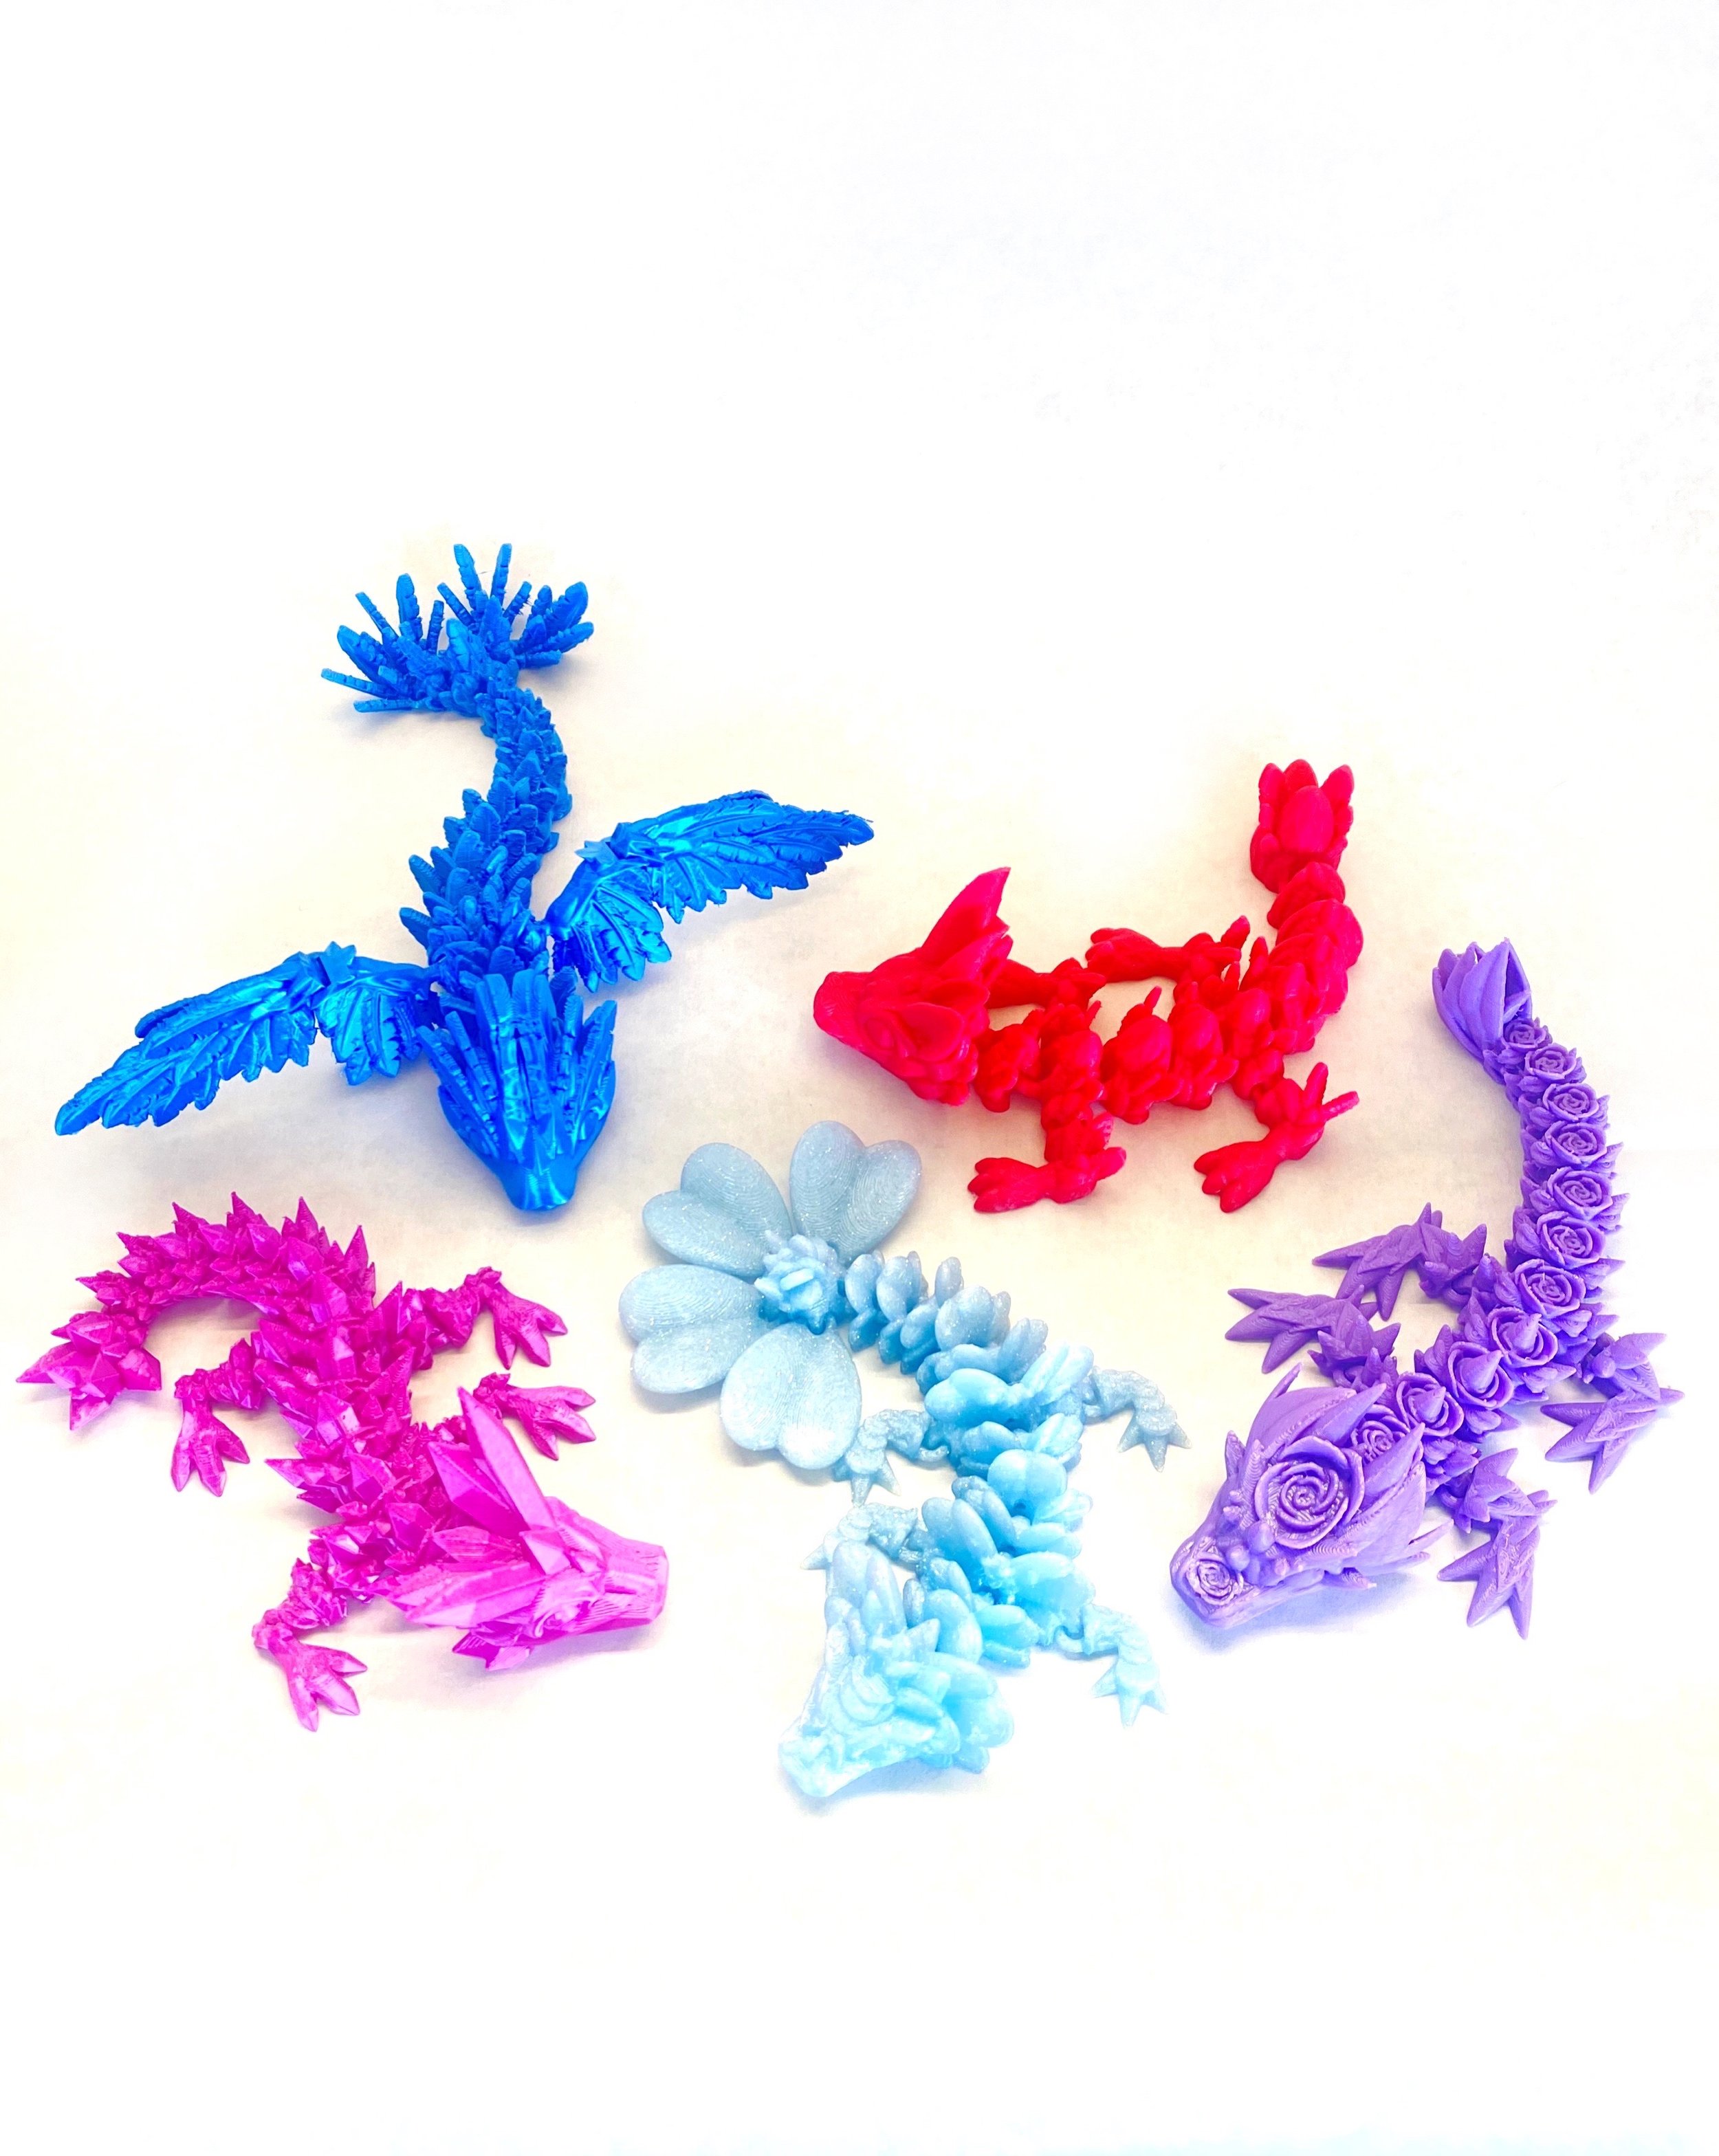 Injured Dragon Grab Bag! — PYE Dice and 3D Printing